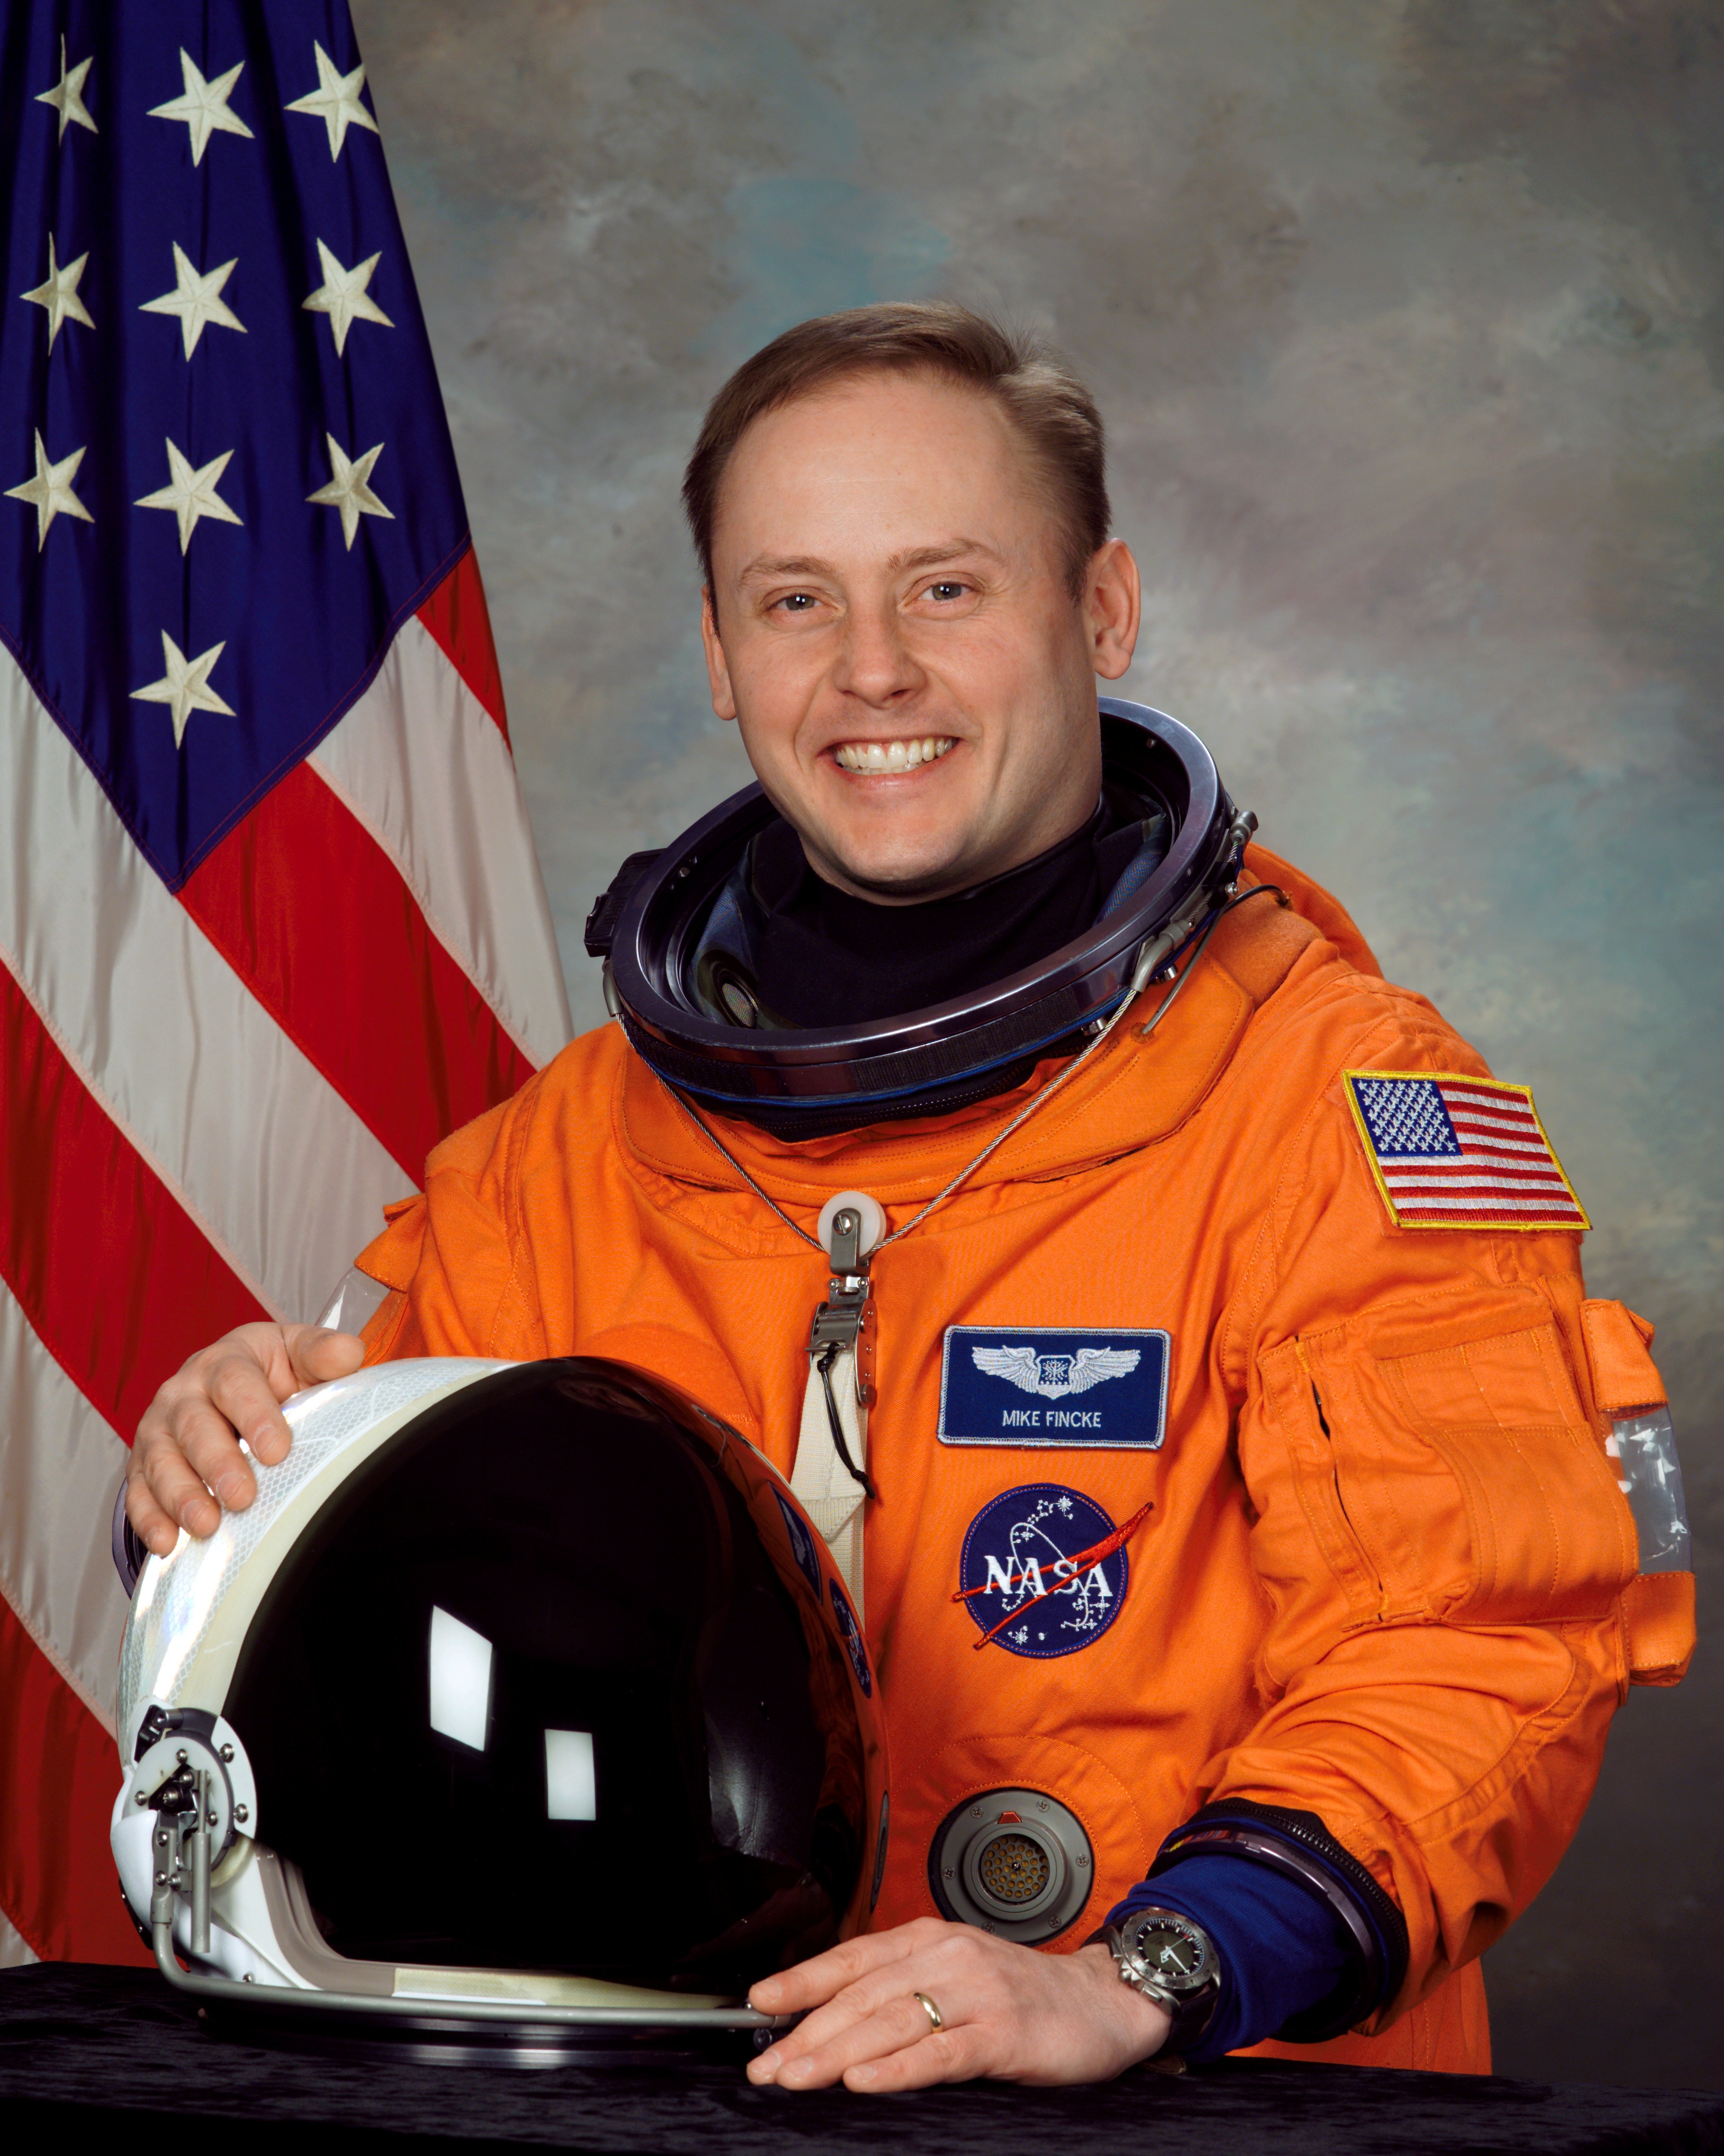 Первый полет американского космонавта. Эндрю Фойстел. Майк Коутс астронавт.